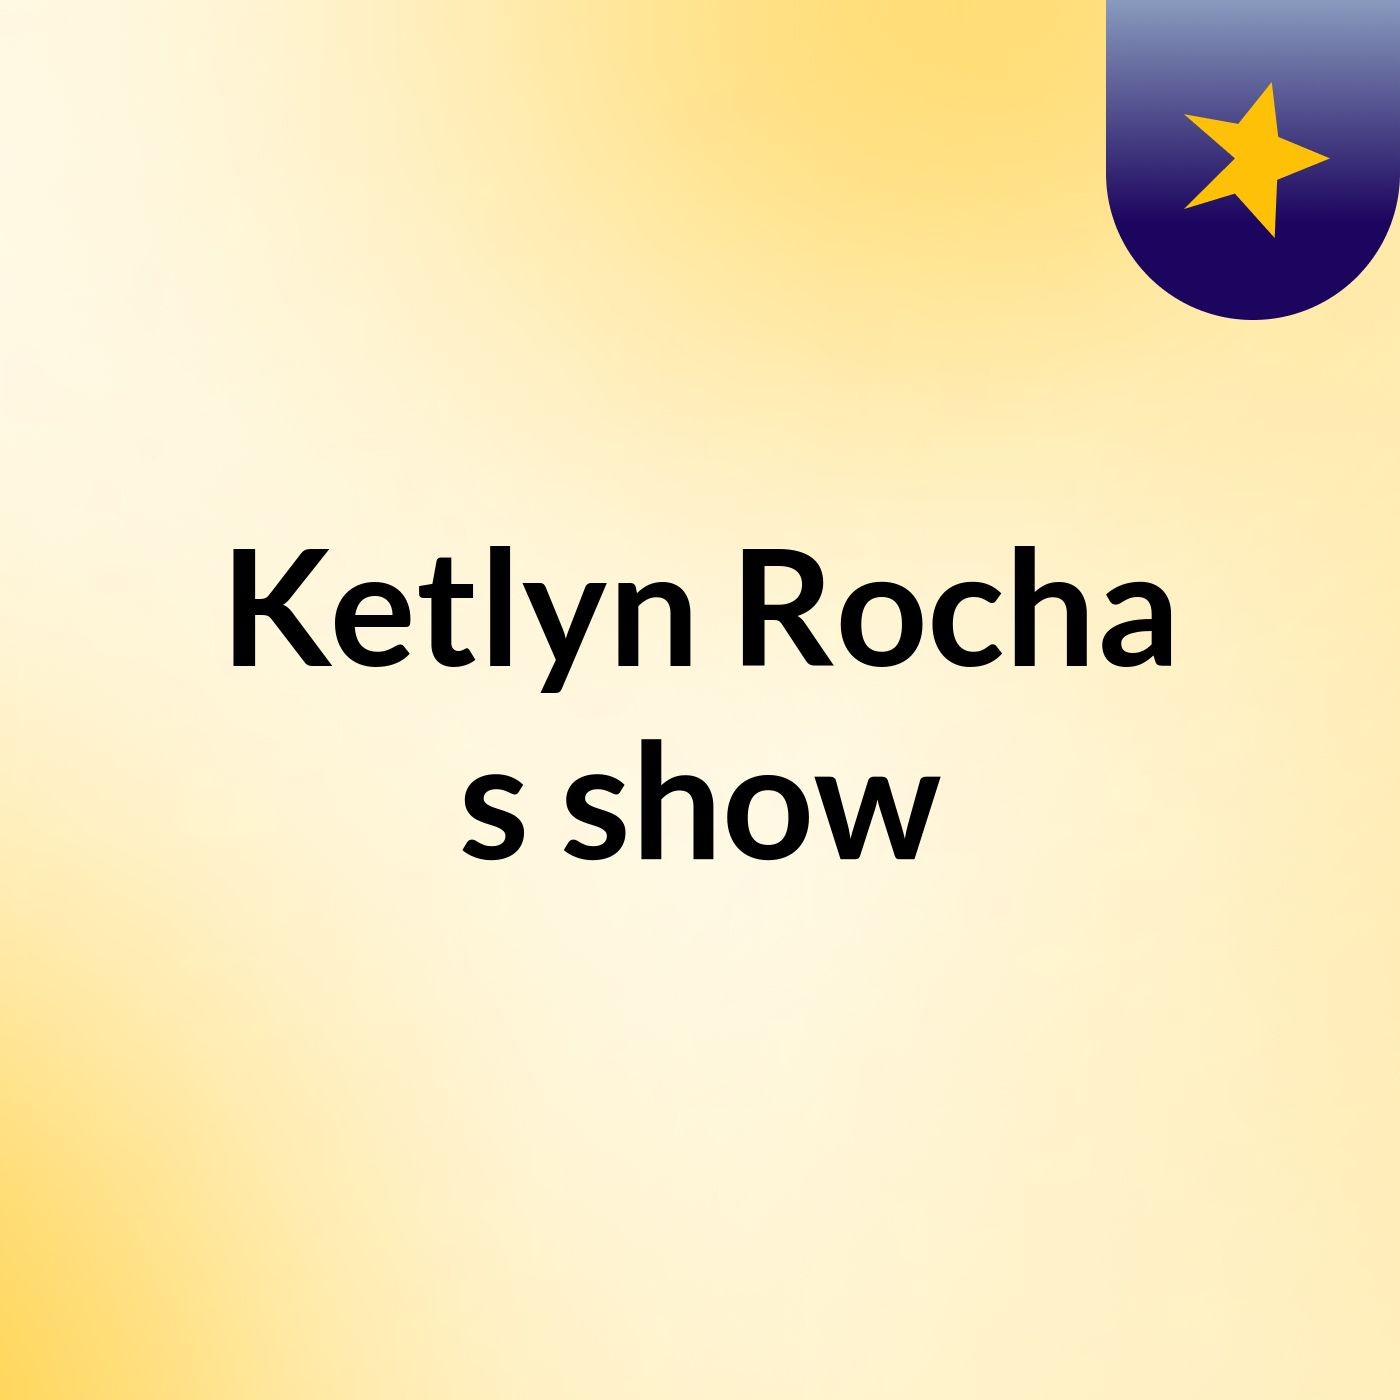 Ketlyn Rocha's show